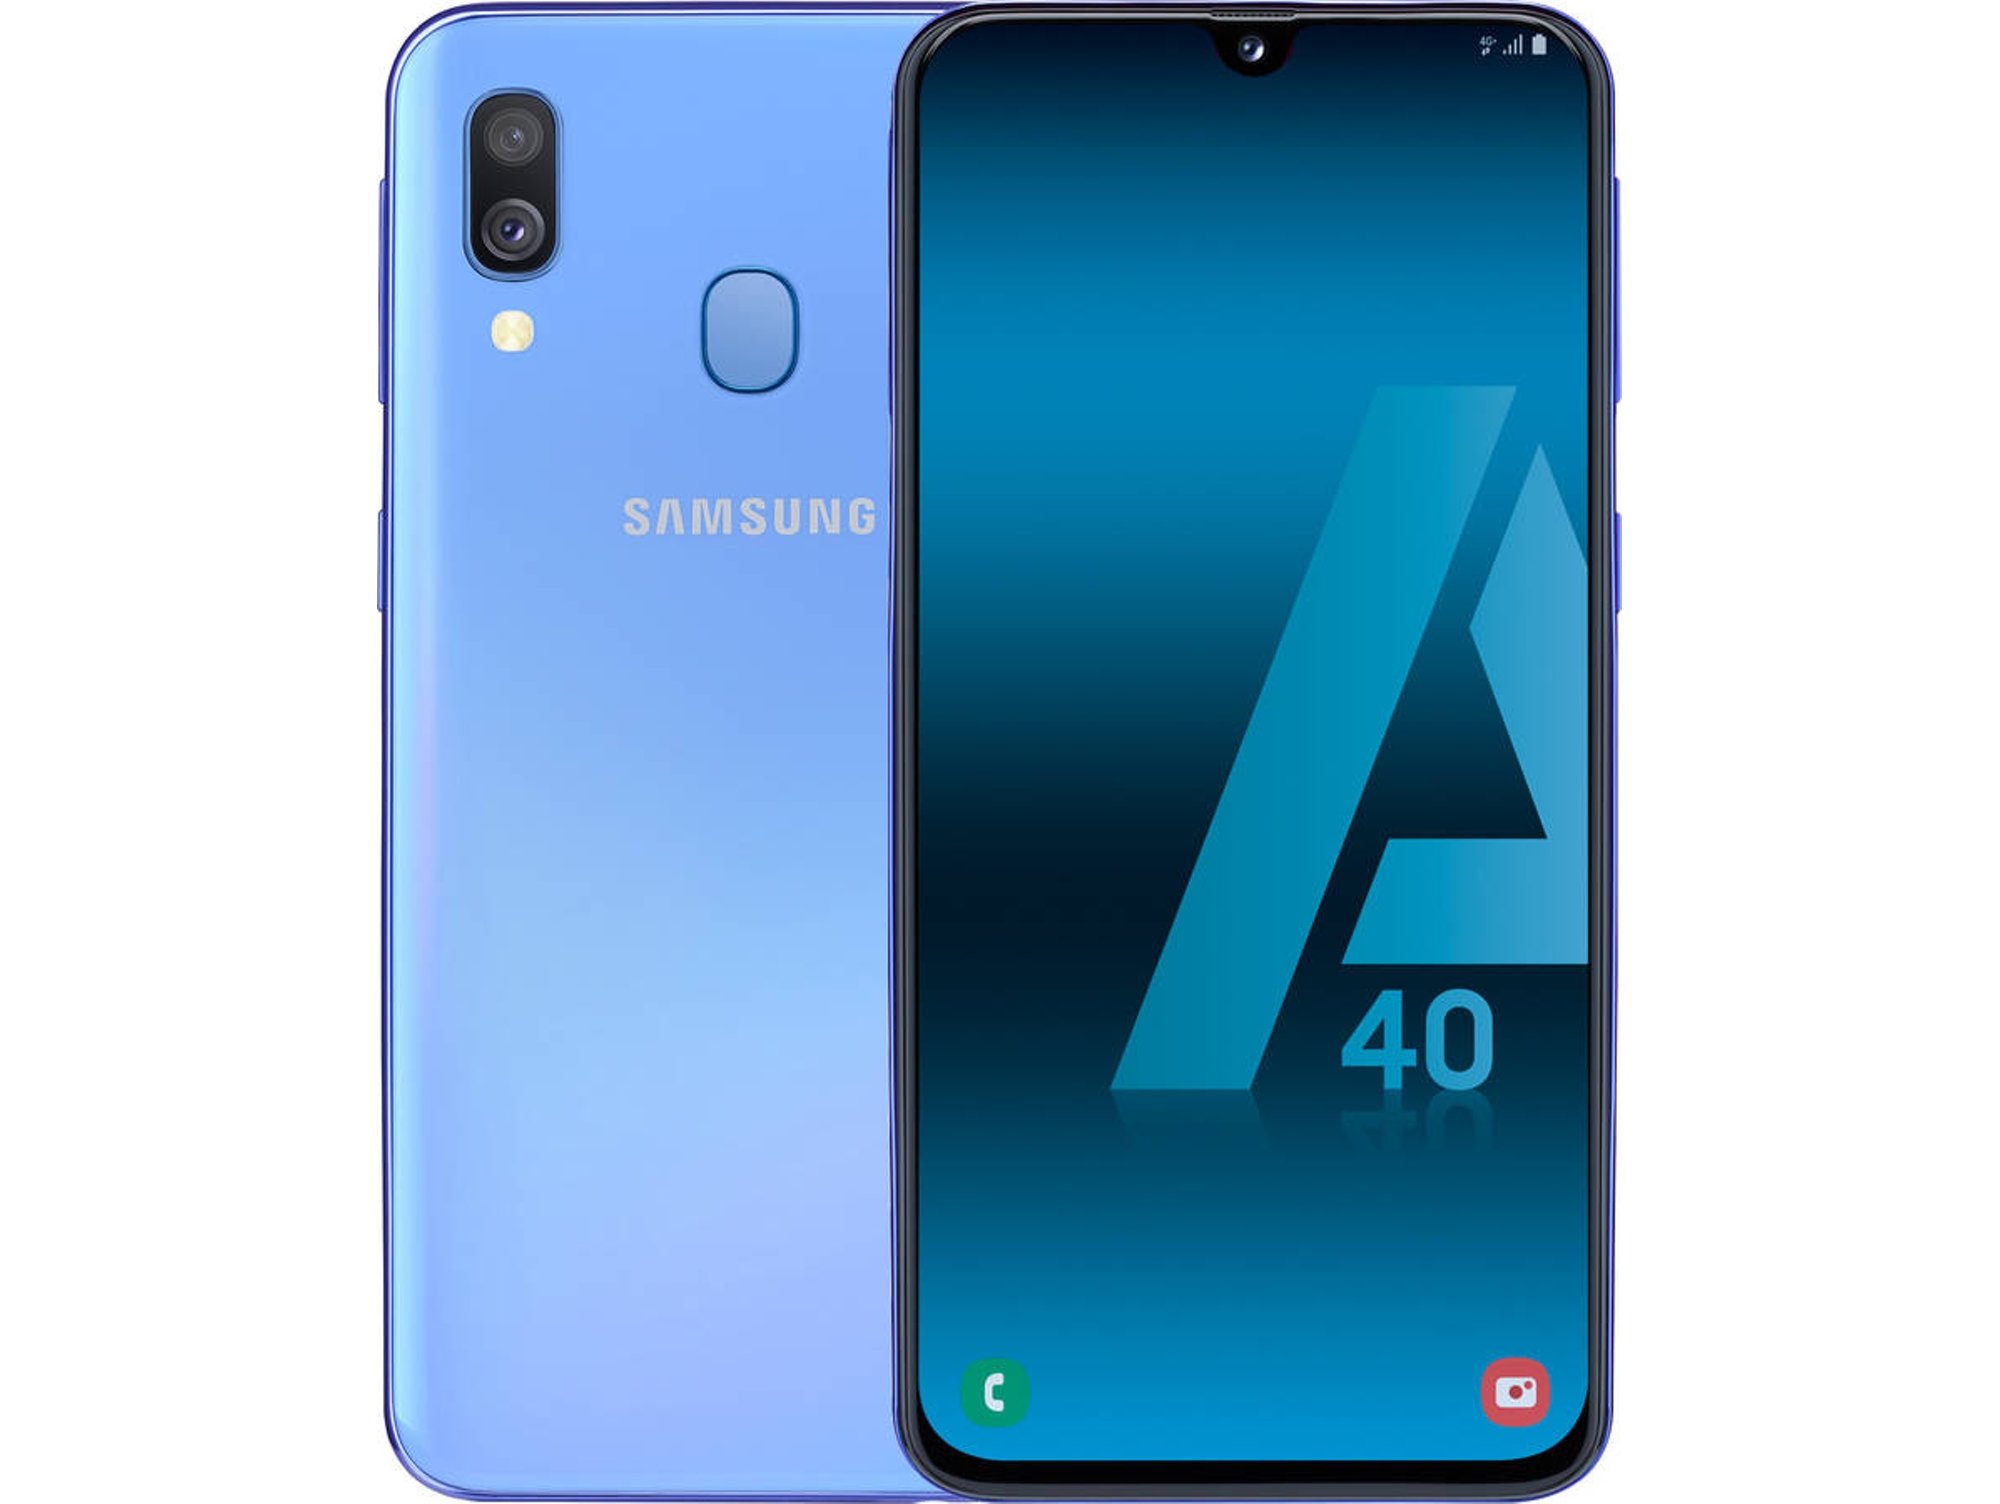 Samsung Galaxy A40 4gb 64 azul libre 464gb sma405f 64gb dual sim bl smartphone 4gb64gb 5.9 samoled fhd+ 1.8 ghz 2516+5mpx 3.100 mah de infinity u display 4 16 7904 1499 59“ 644gb 3100 59